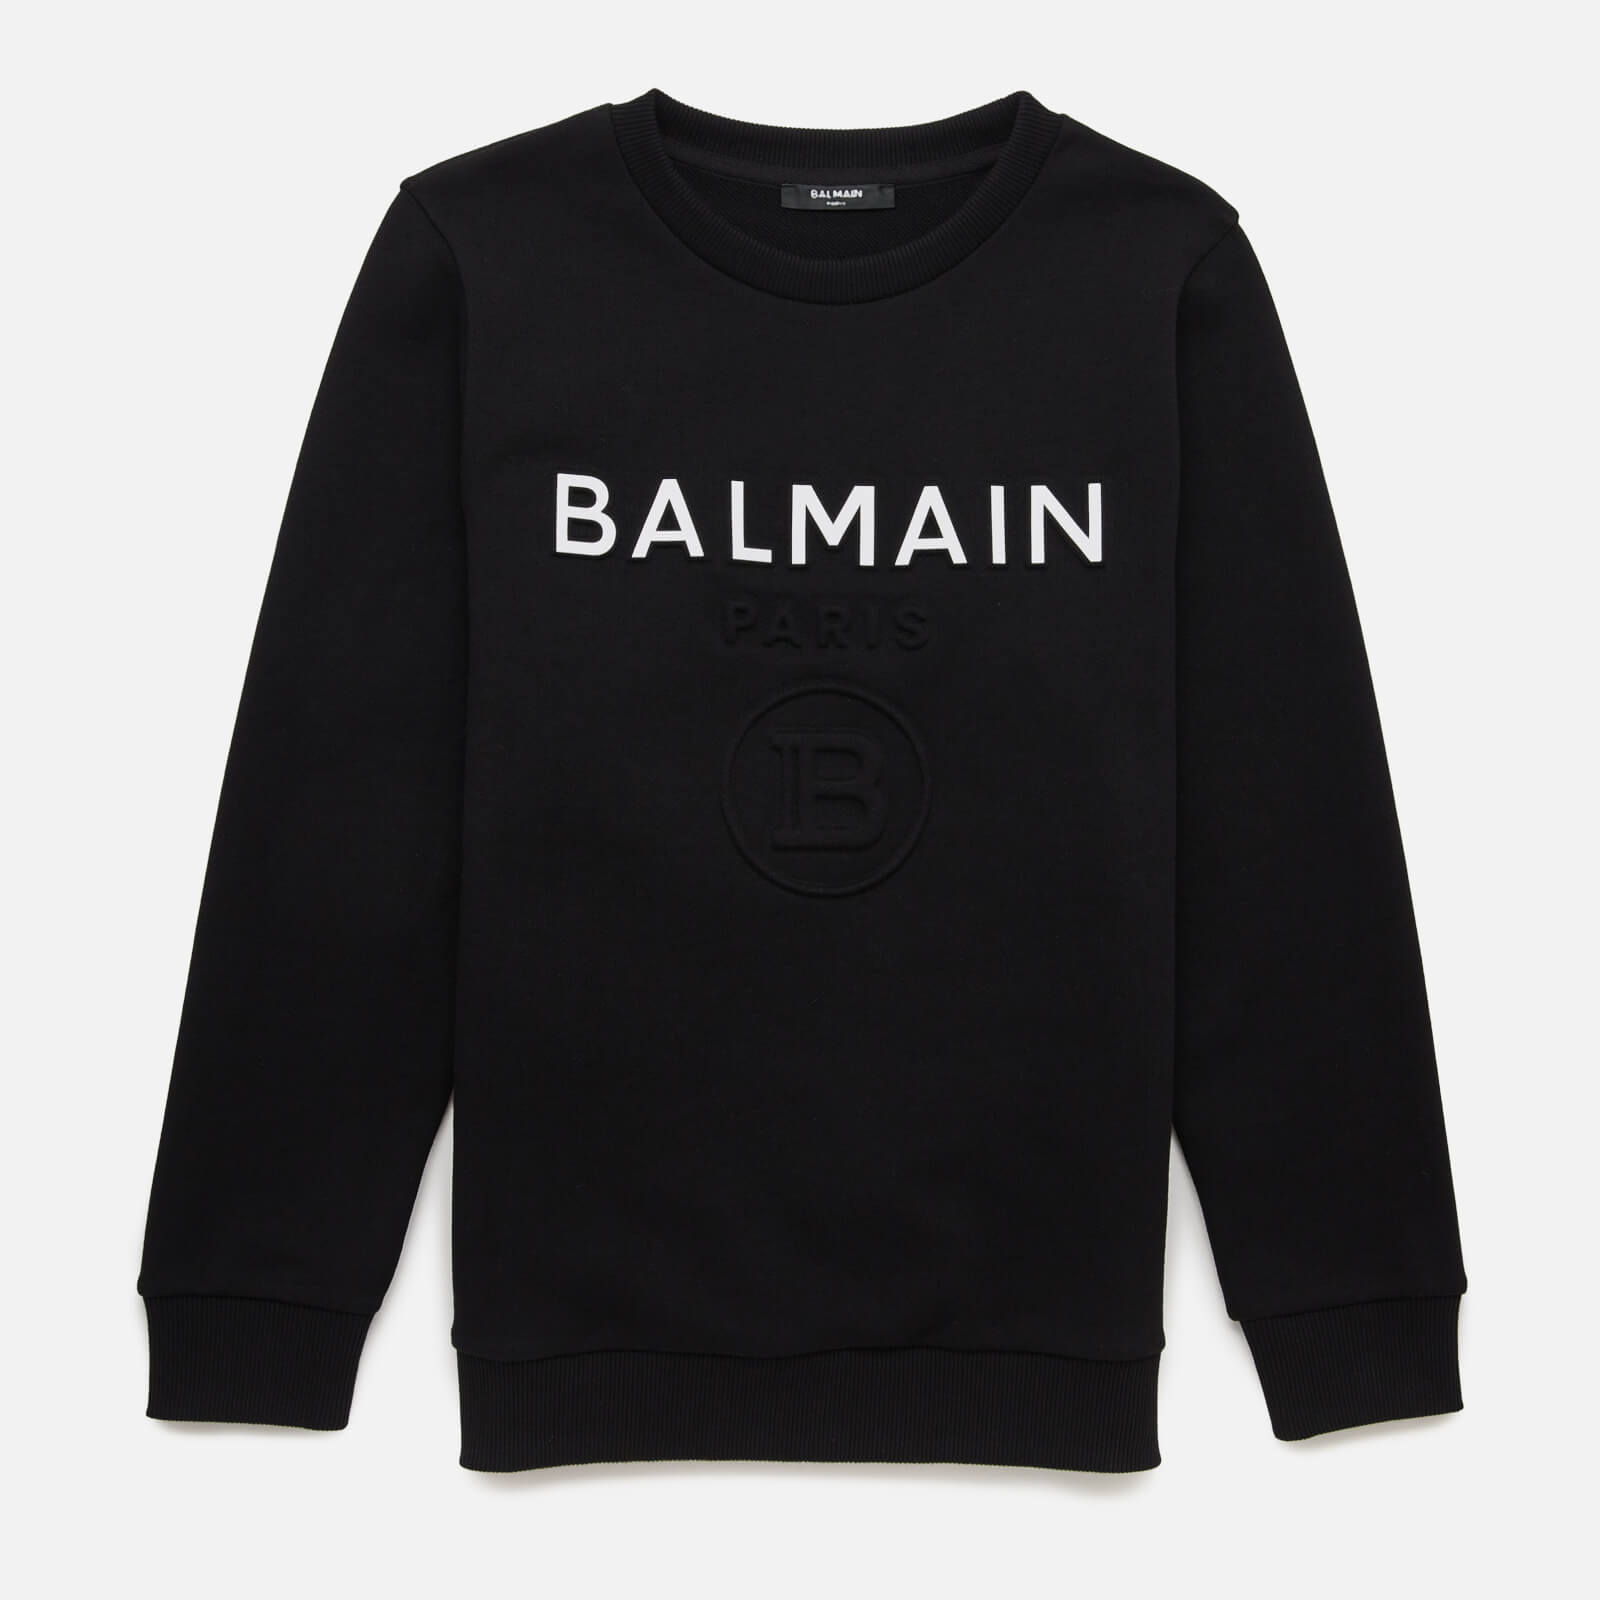 Balmain Boys' Sweatshirt - Nero - 8 Years